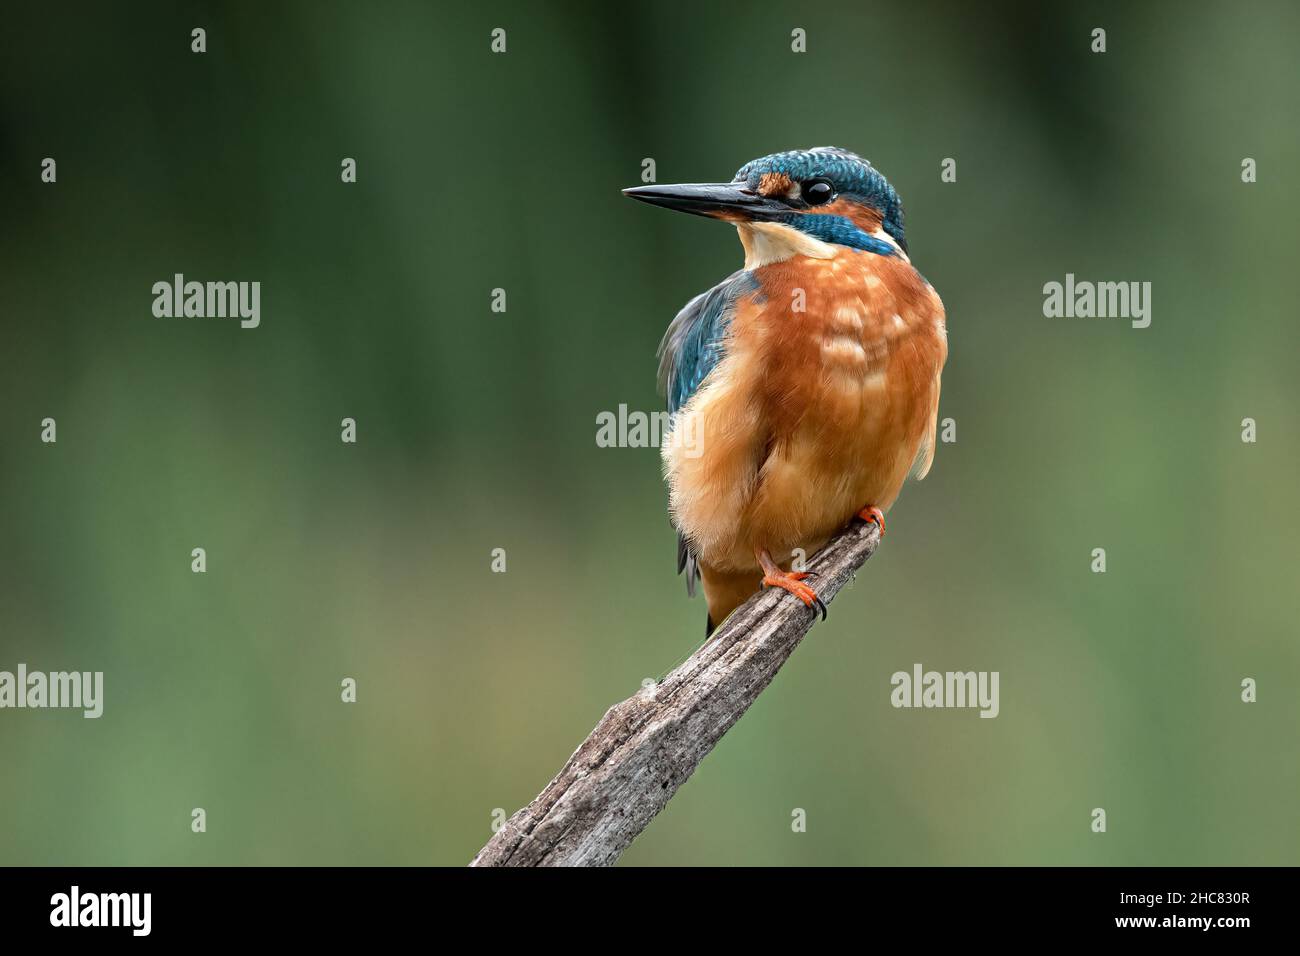 Un retrato de un hombre kingfisher está encaramado en una antigua rama mirando hacia el espacio negativo Foto de stock